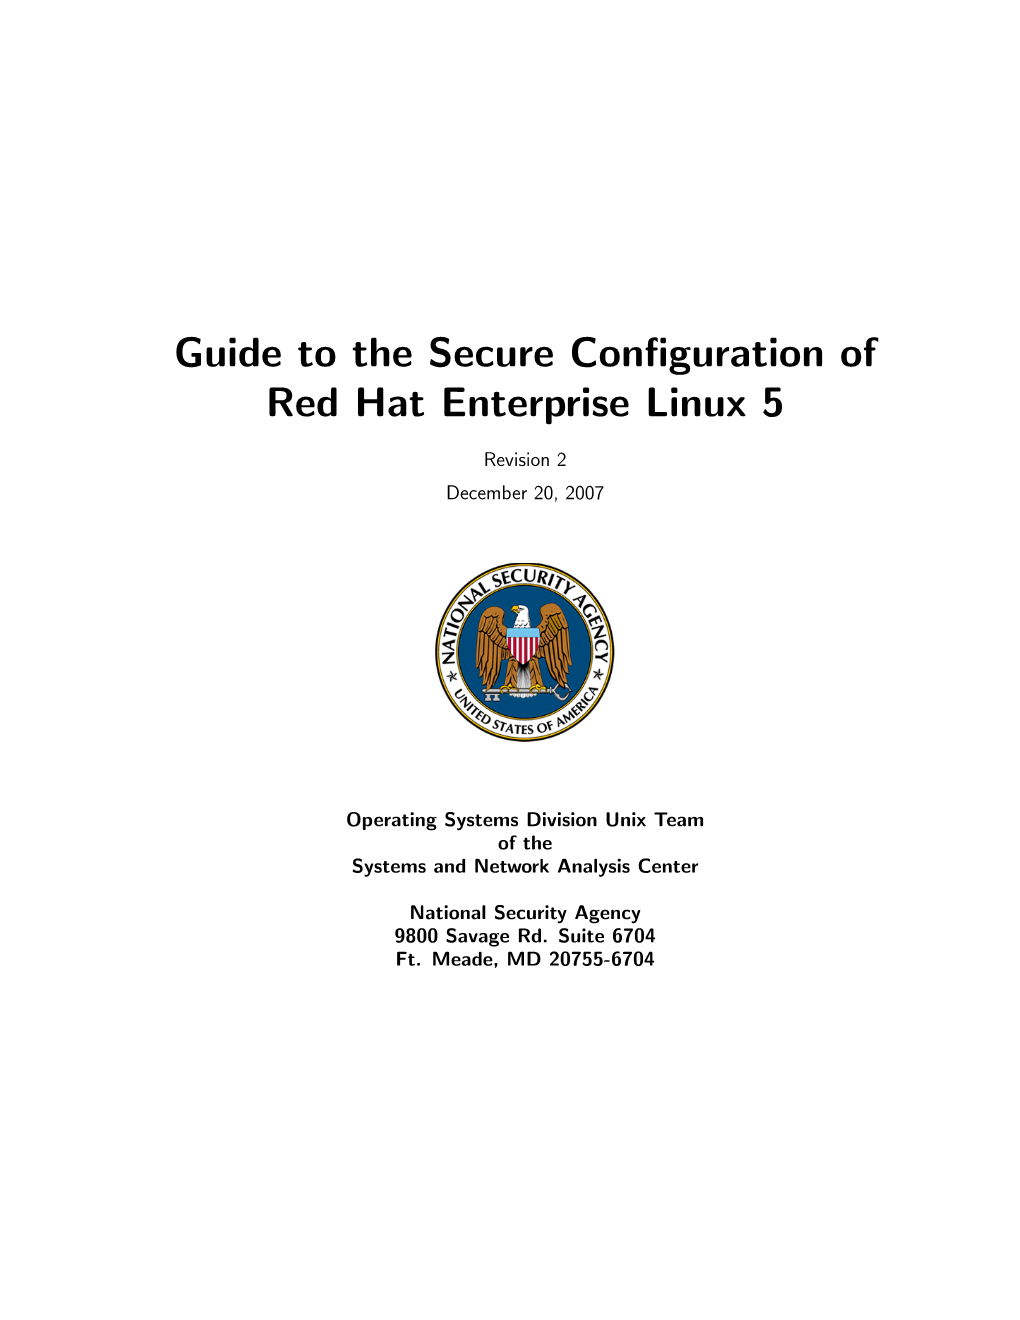 NSA RHEL Guide I731